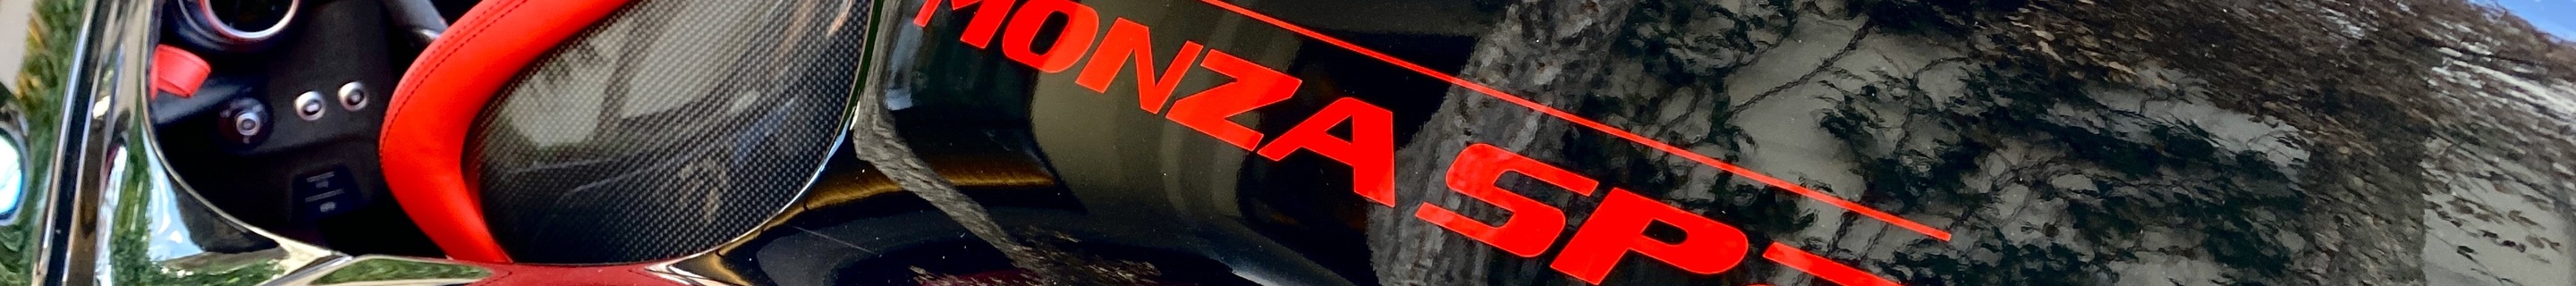 Ferrari Monza SP2